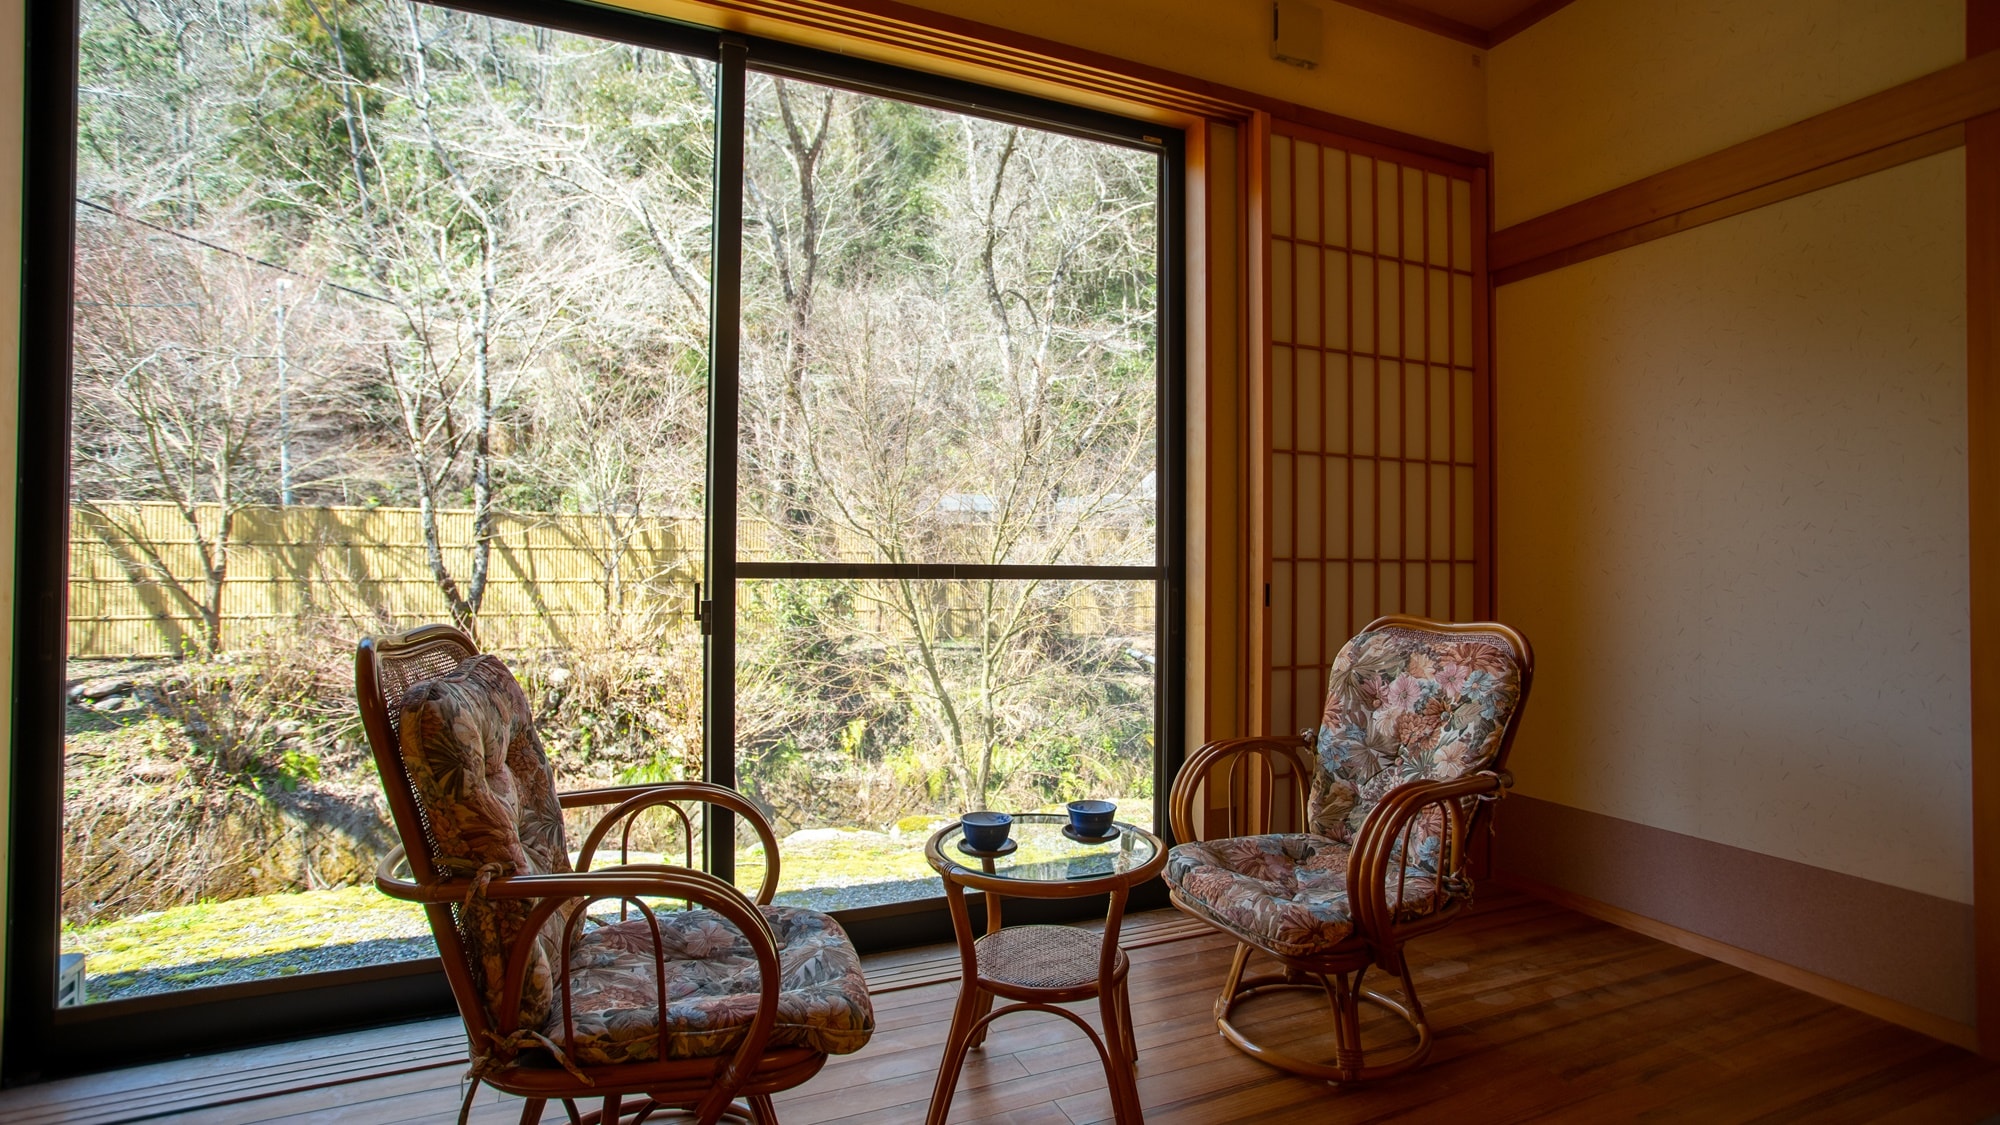 * ■ ห้องสไตล์ญี่ปุ่น 10 เสื่อทาทามิ (ตัวอย่าง) ■ คุณสามารถใช้เวลาพักผ่อนกับวิวทิวทัศน์